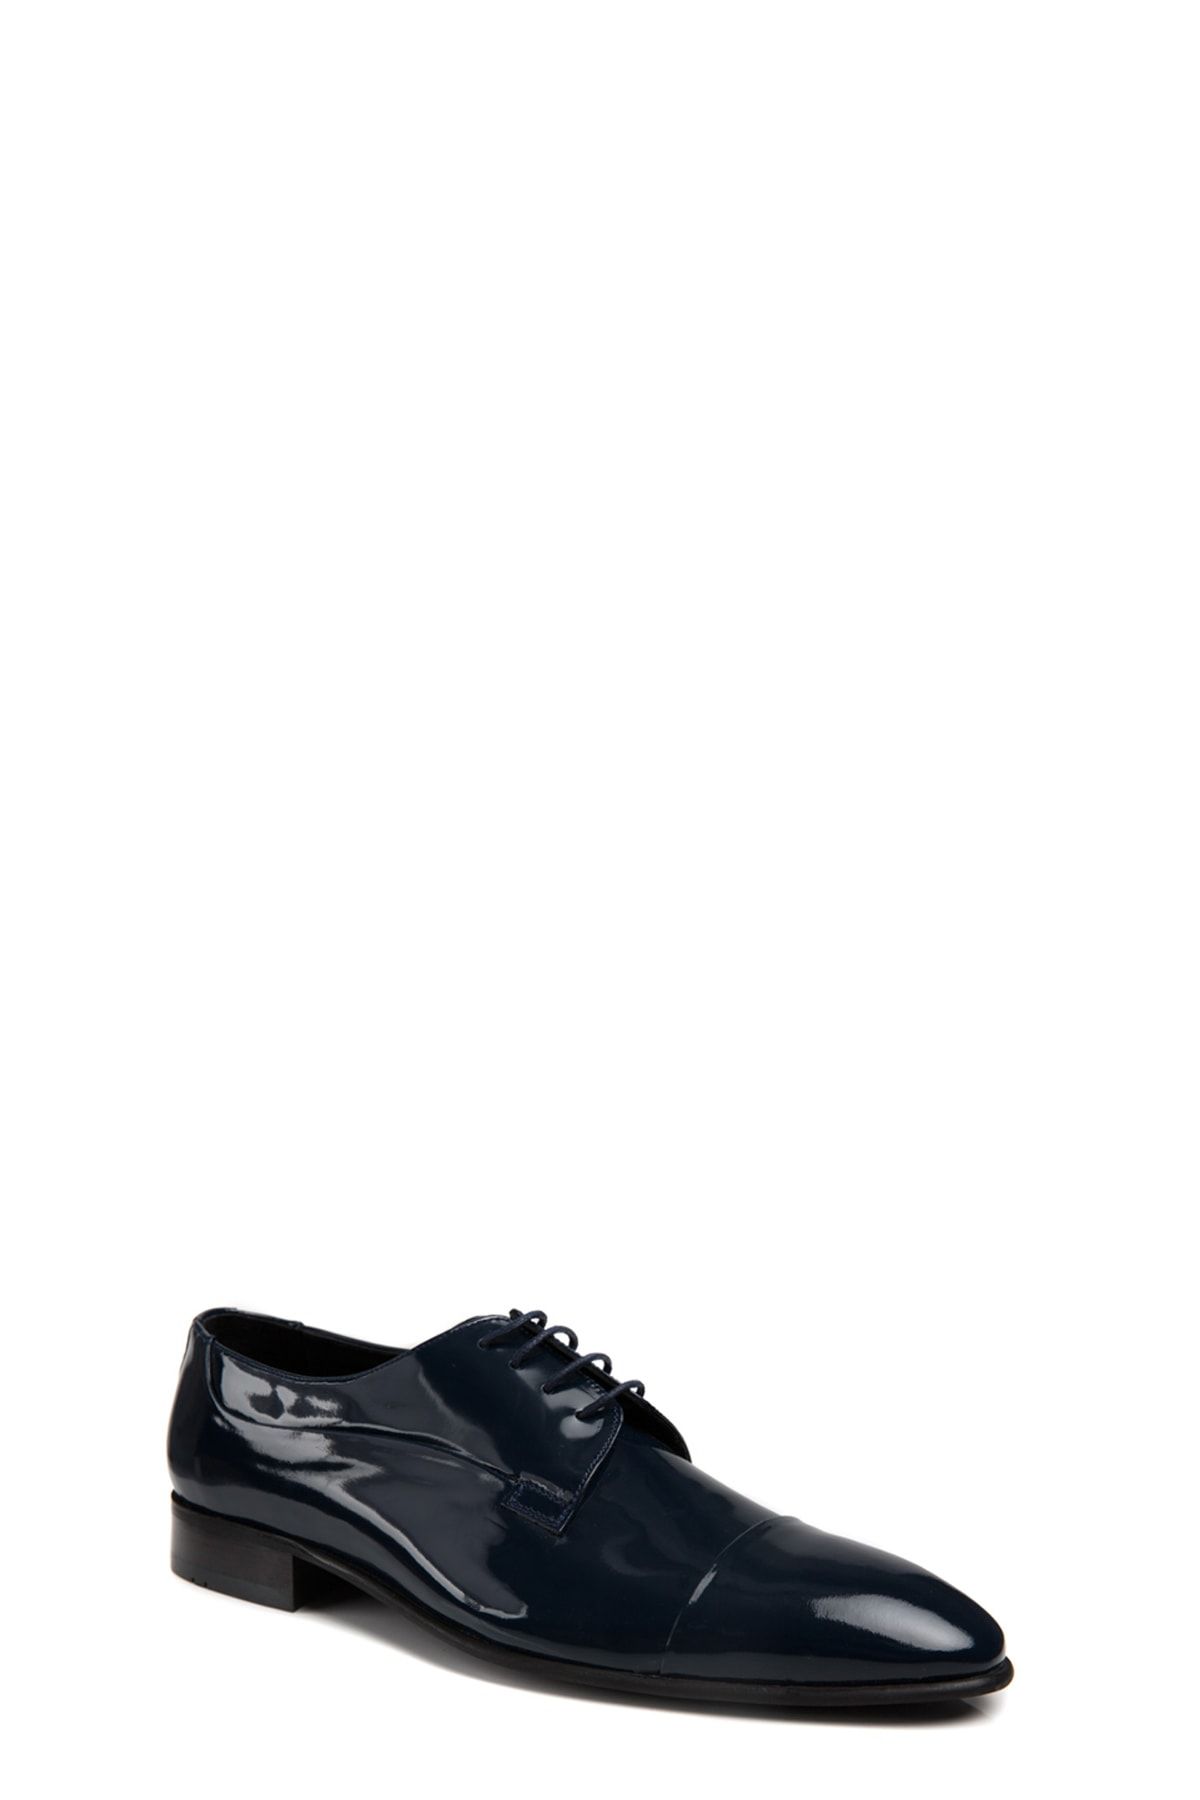 D'S Damat Lacivert Klasik Ayakkabı-6HSS90312638-101